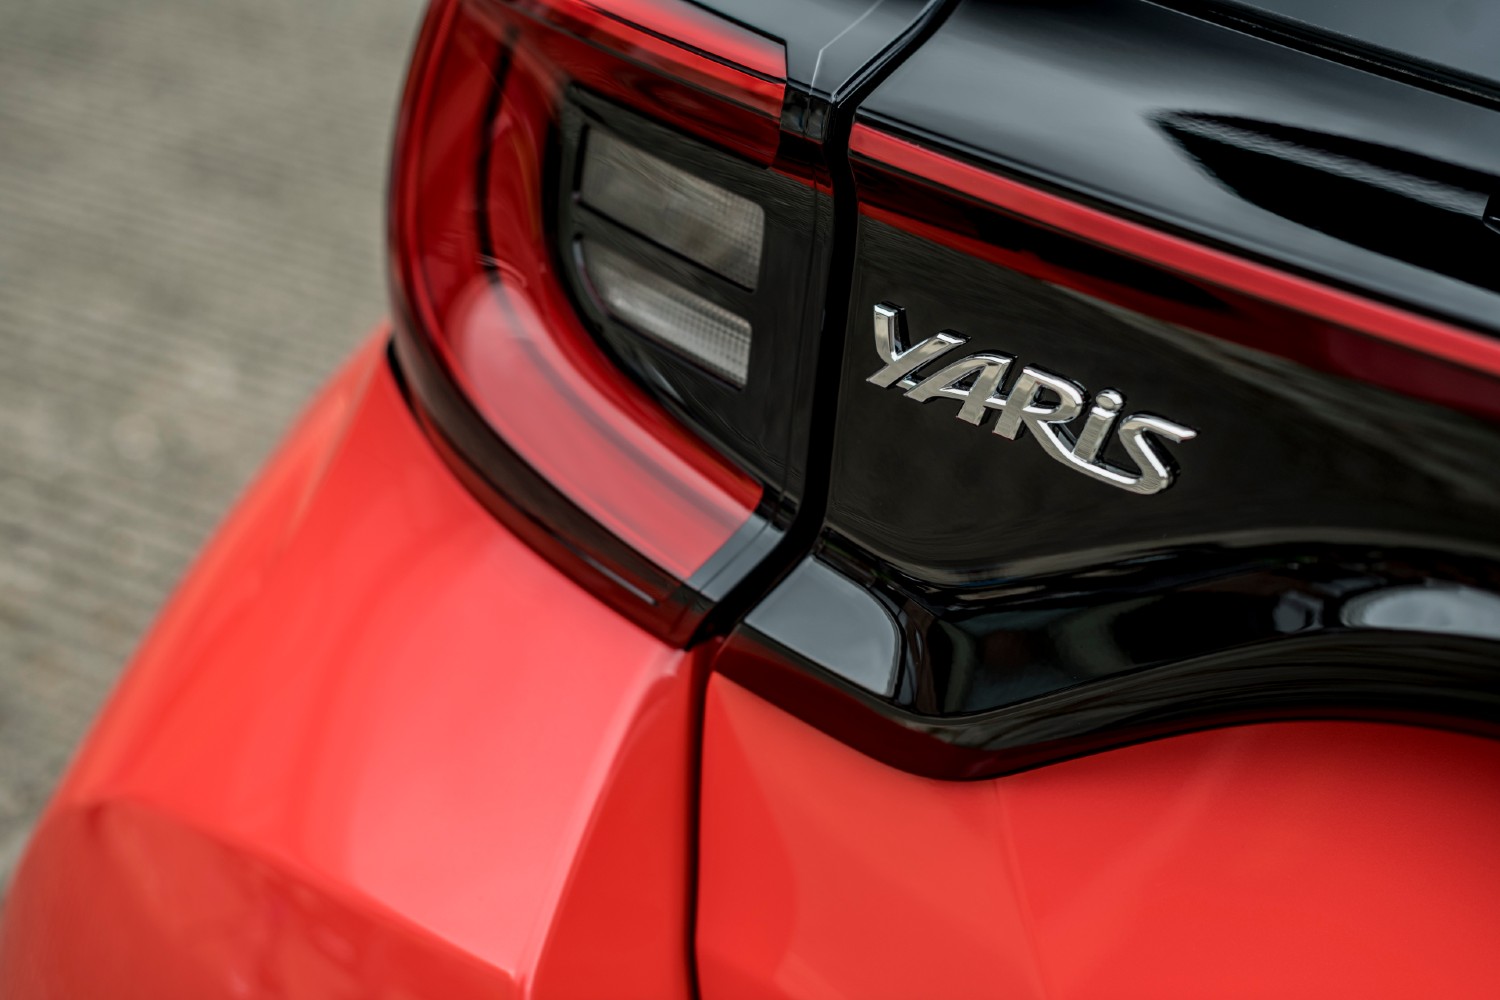 O novo Toyota Yaris já está disponível para configuração no site oficial da Toyota